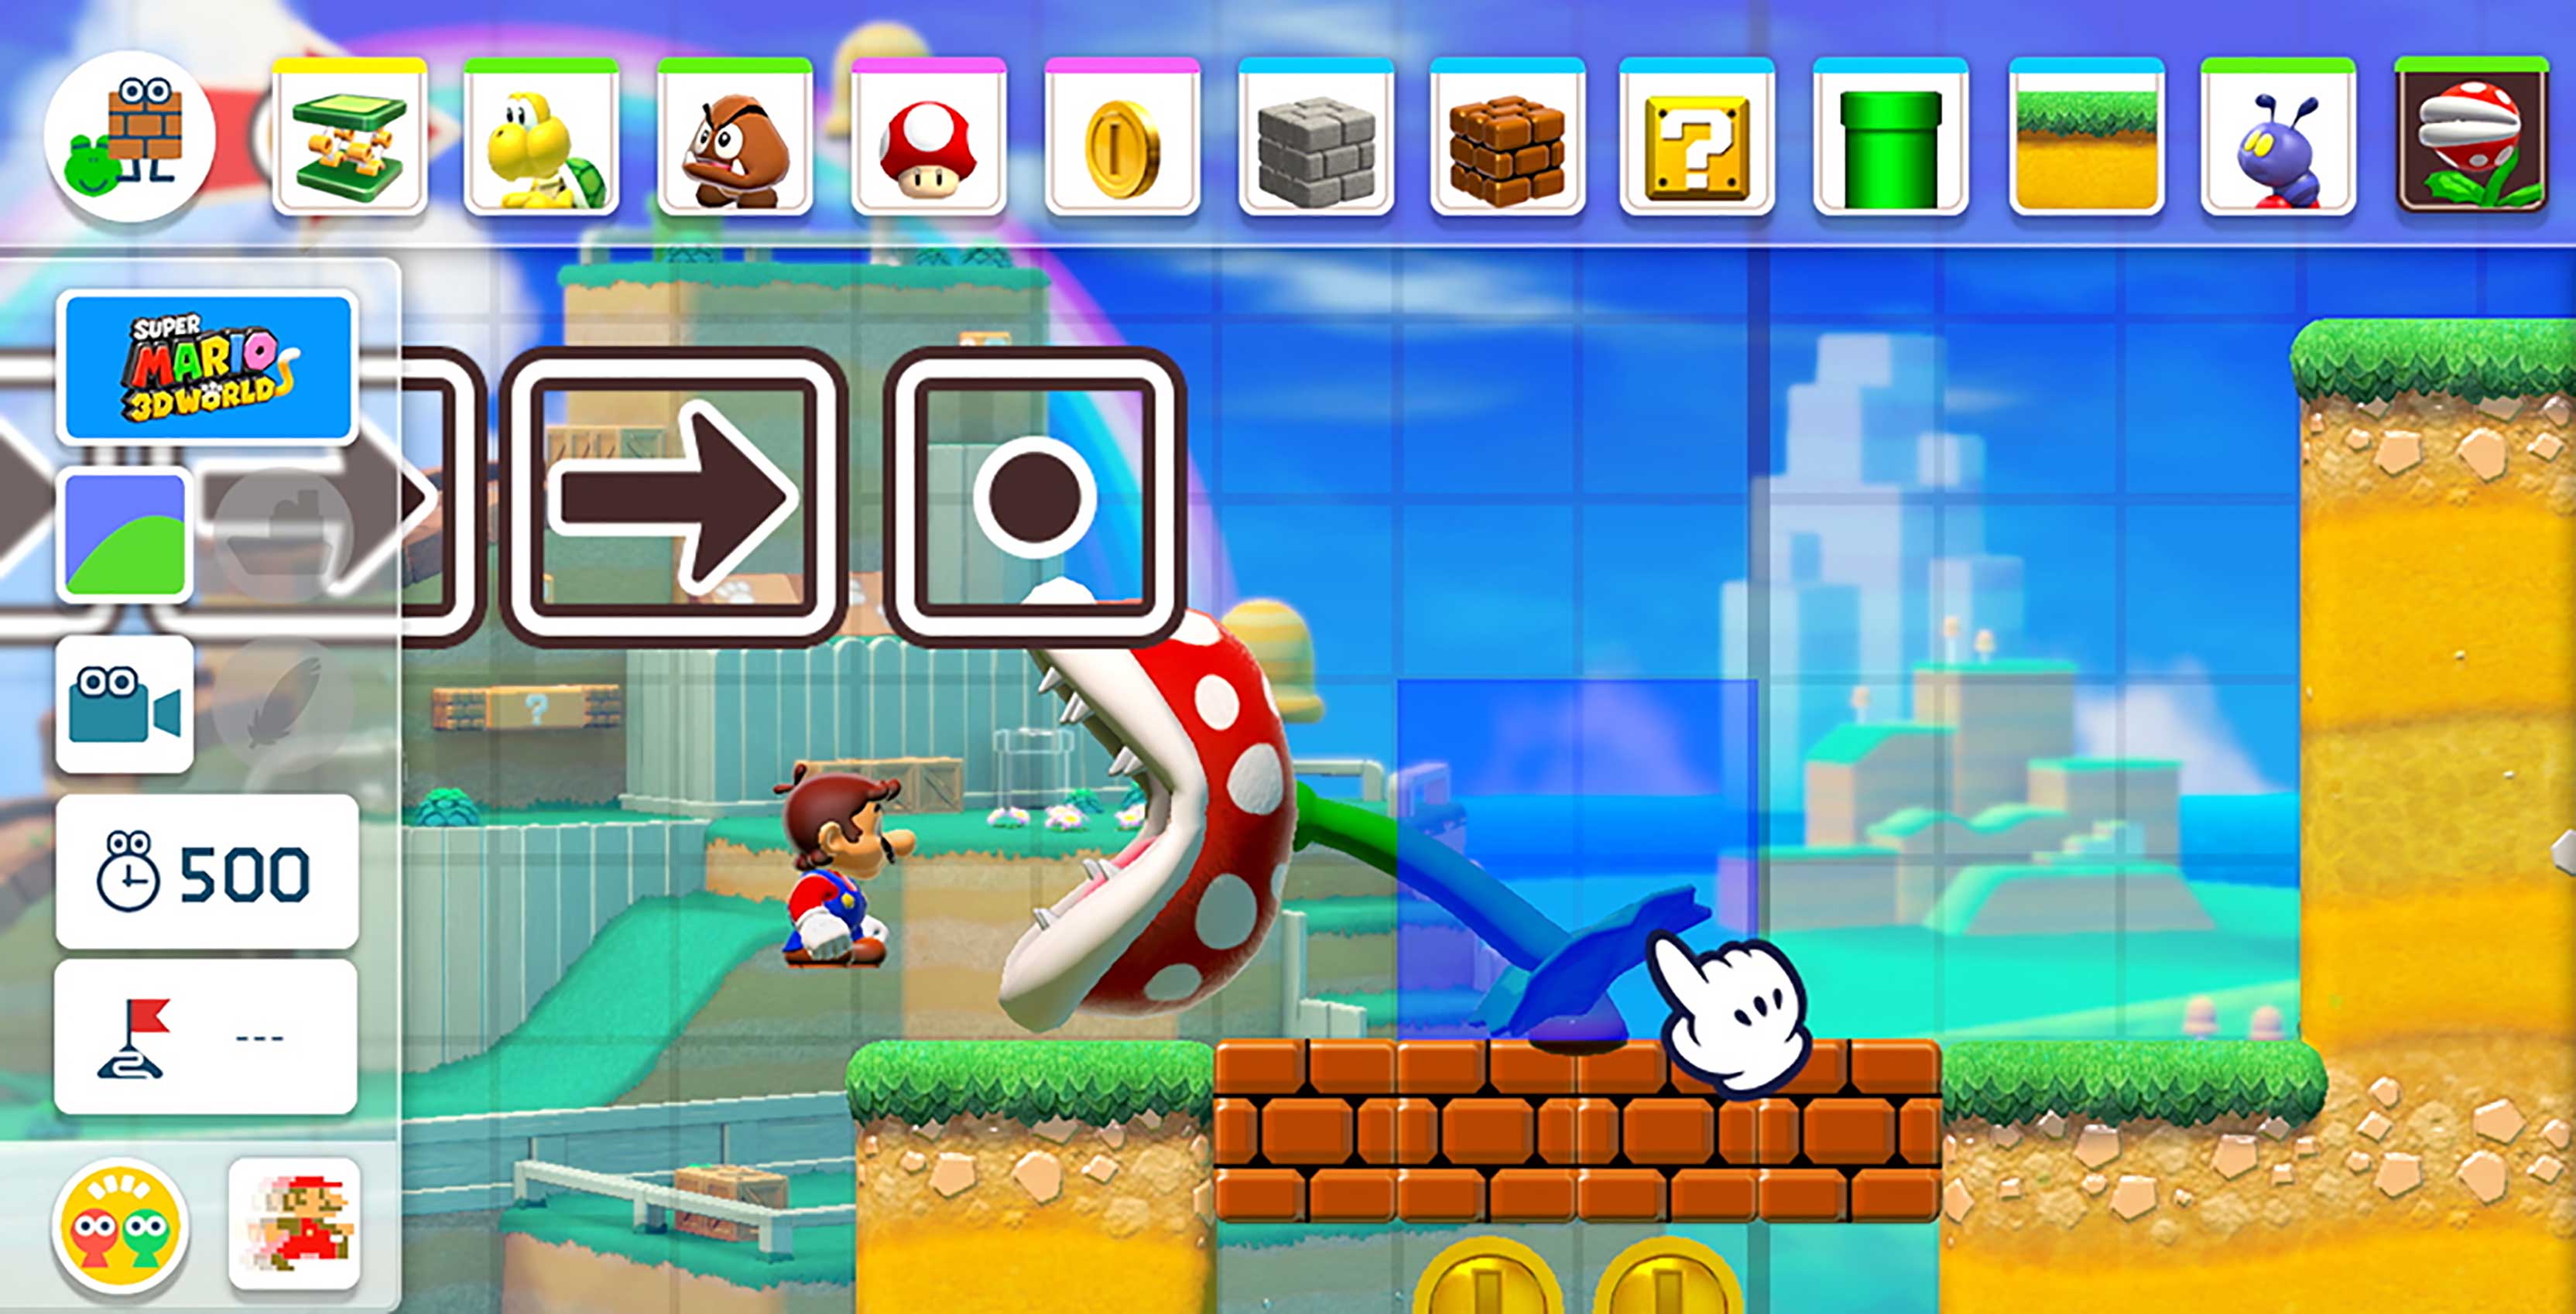 Nintendo reveals new Super Mario Maker 2 creation tools, story mode